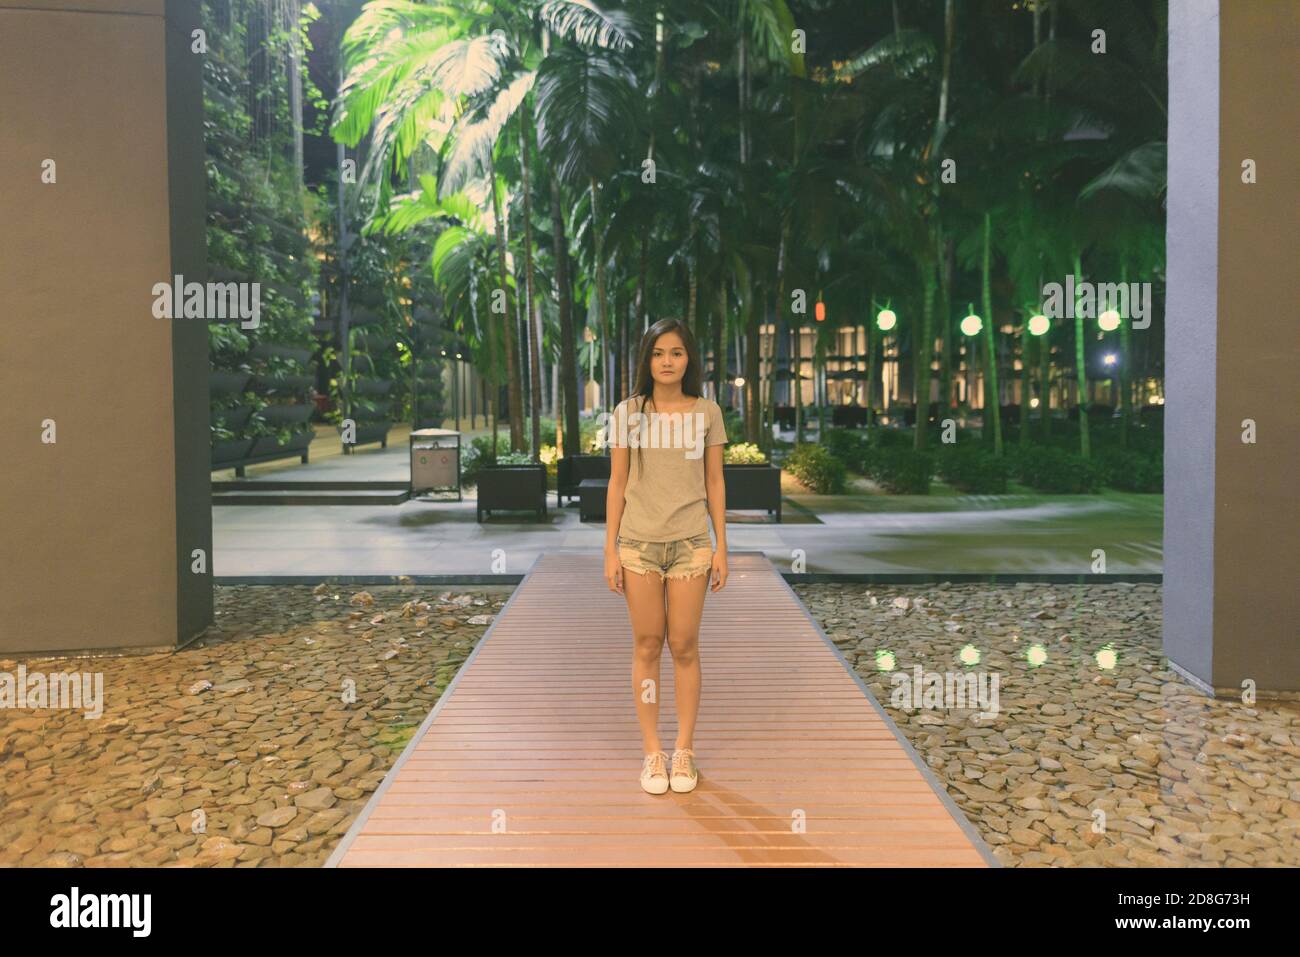 Junge, schöne asiatische Frau, die auf Holzstegen am Hoteleingang steht Stockfoto